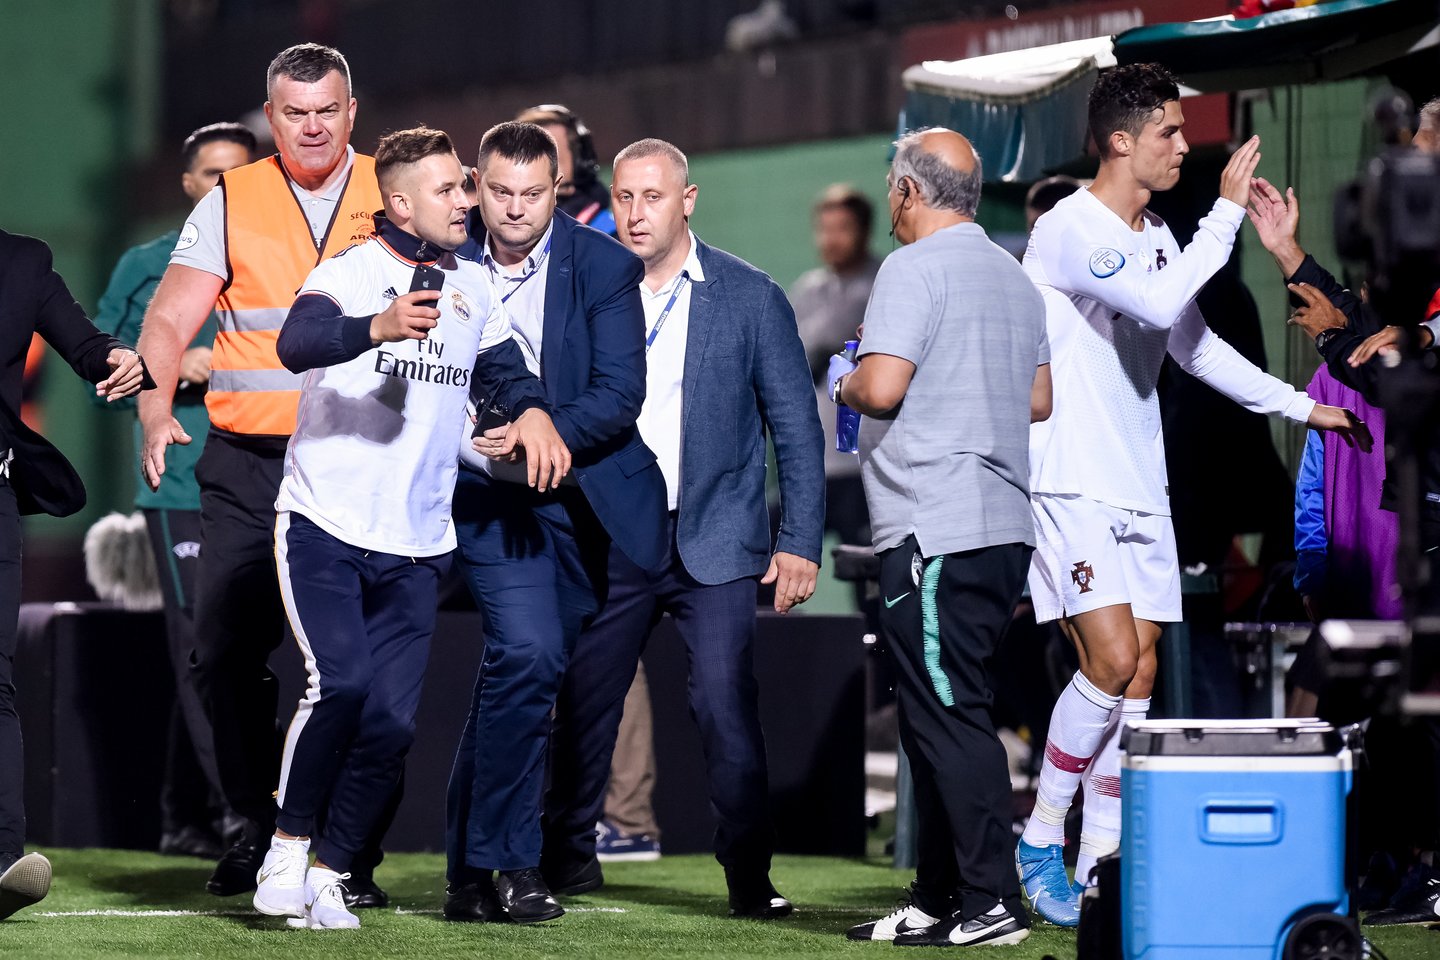 A.Gadeikis, kuris per Lietuvos ir Portugalijos futbolininkų rungtynes Vilniuje rugsėjo 10-ąją įsiveržė į aikštę ir atsiklaupė prieš C.Ronaldo, kartu su mūsų šalies rinktine tuo pačiu užsakytu lėktuvu atskrido į Portugaliją.<br>D.Umbraso nuotr.